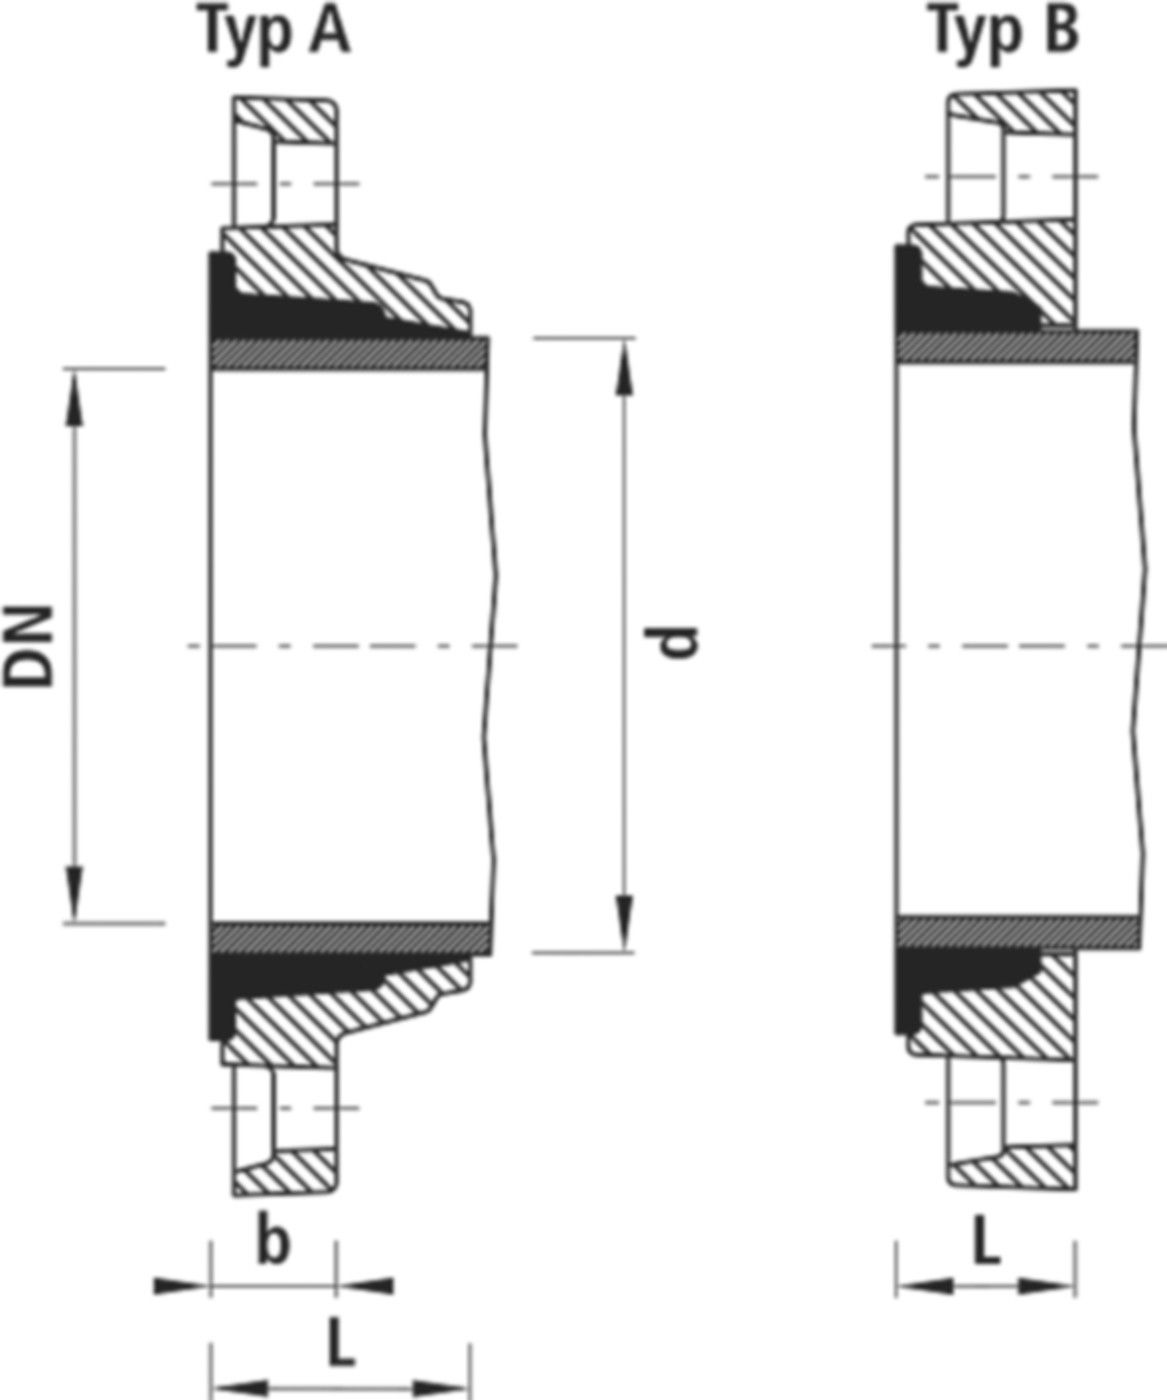 Zweikammer-Flansch für Stahlrohre 7130 PN 16 DN 200 / AD 216mm - Hawle Flanschformstücke